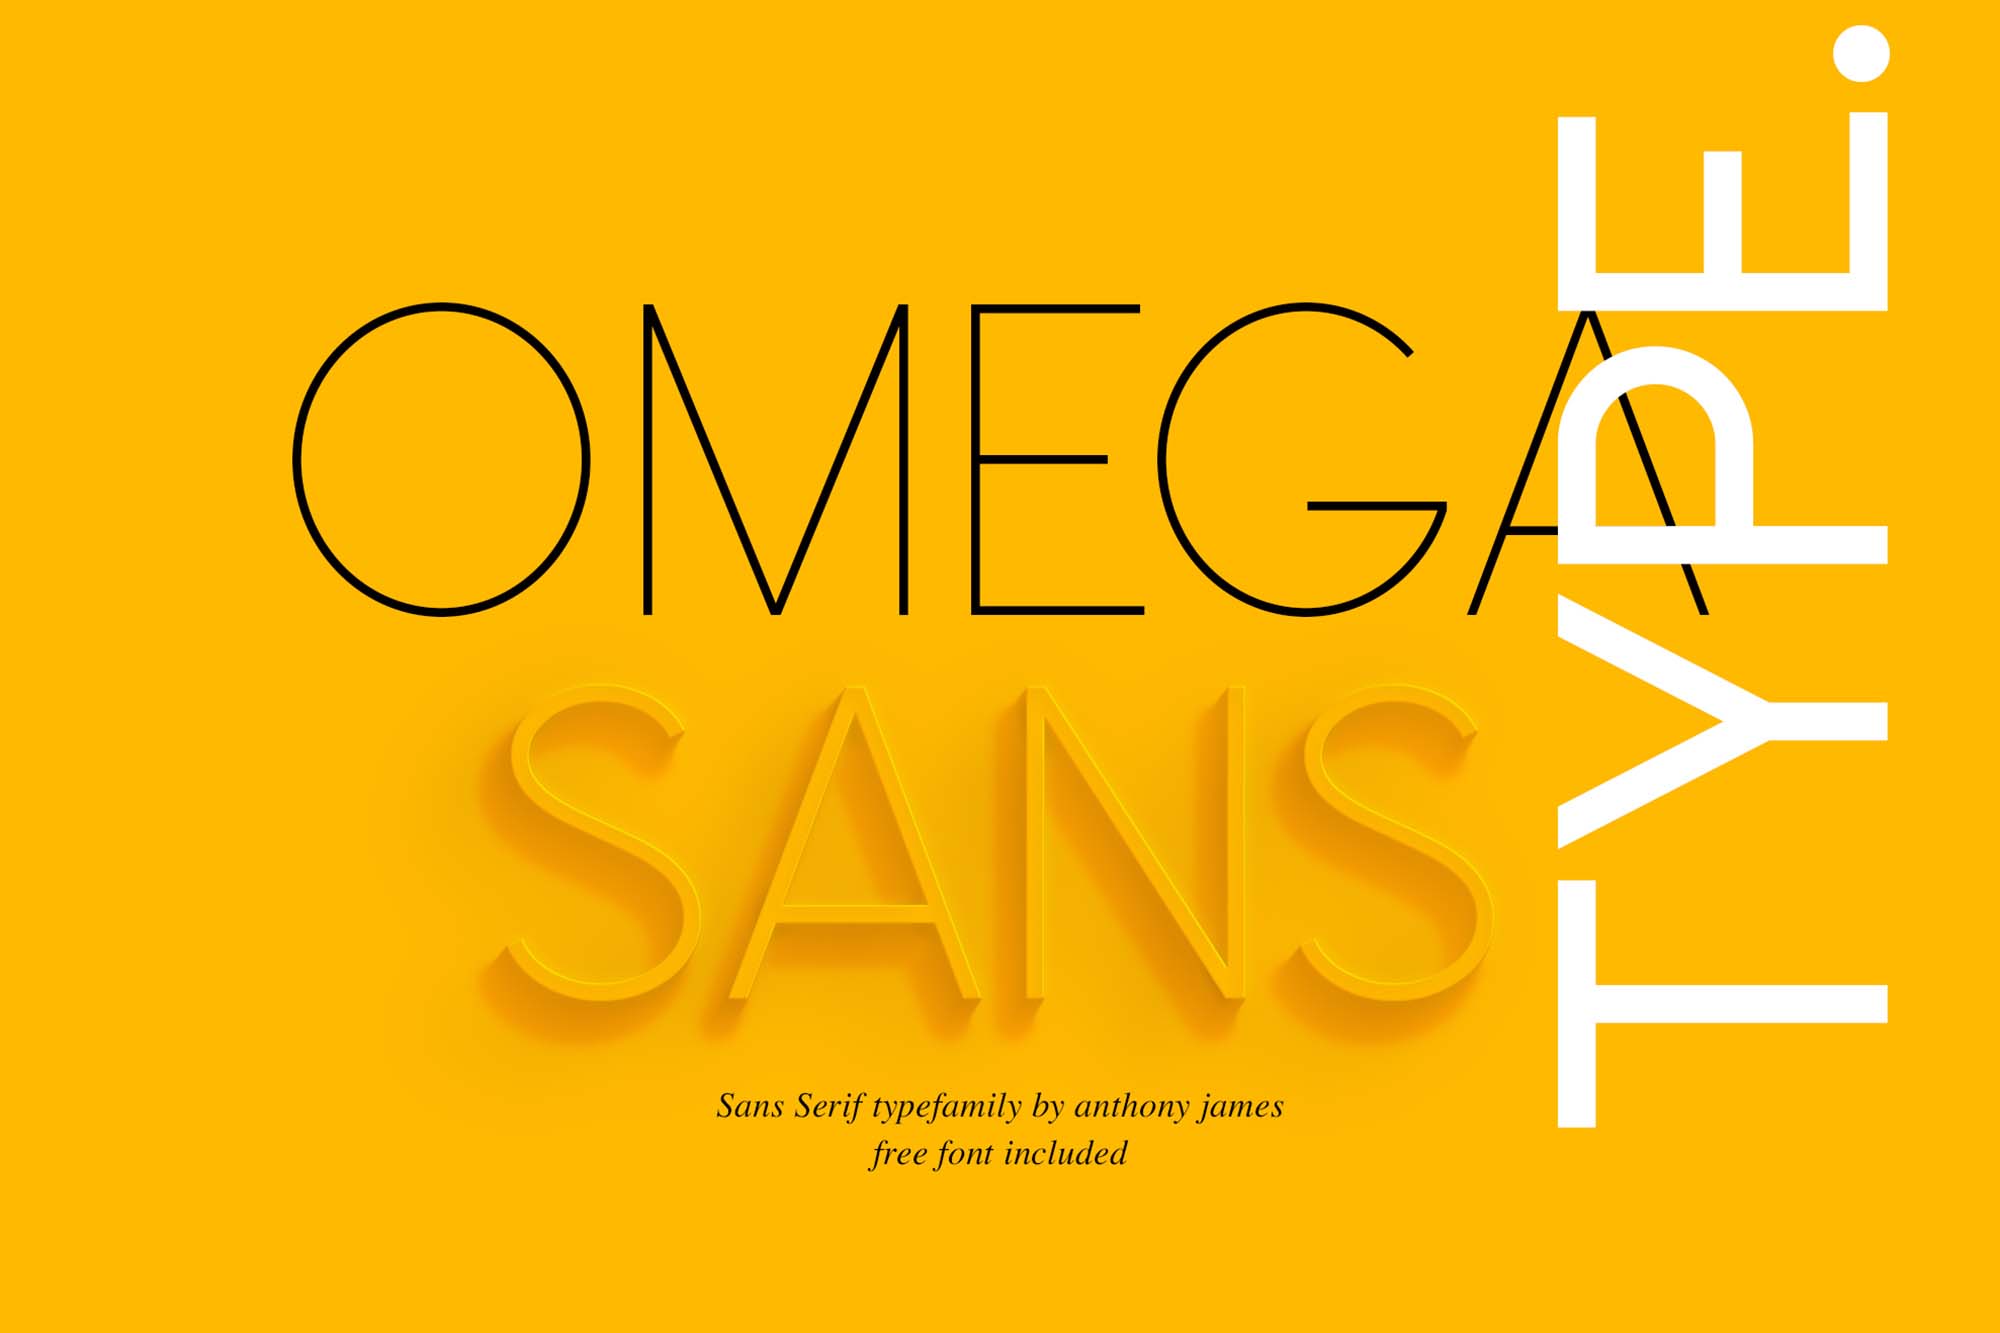 Omega Sans Font